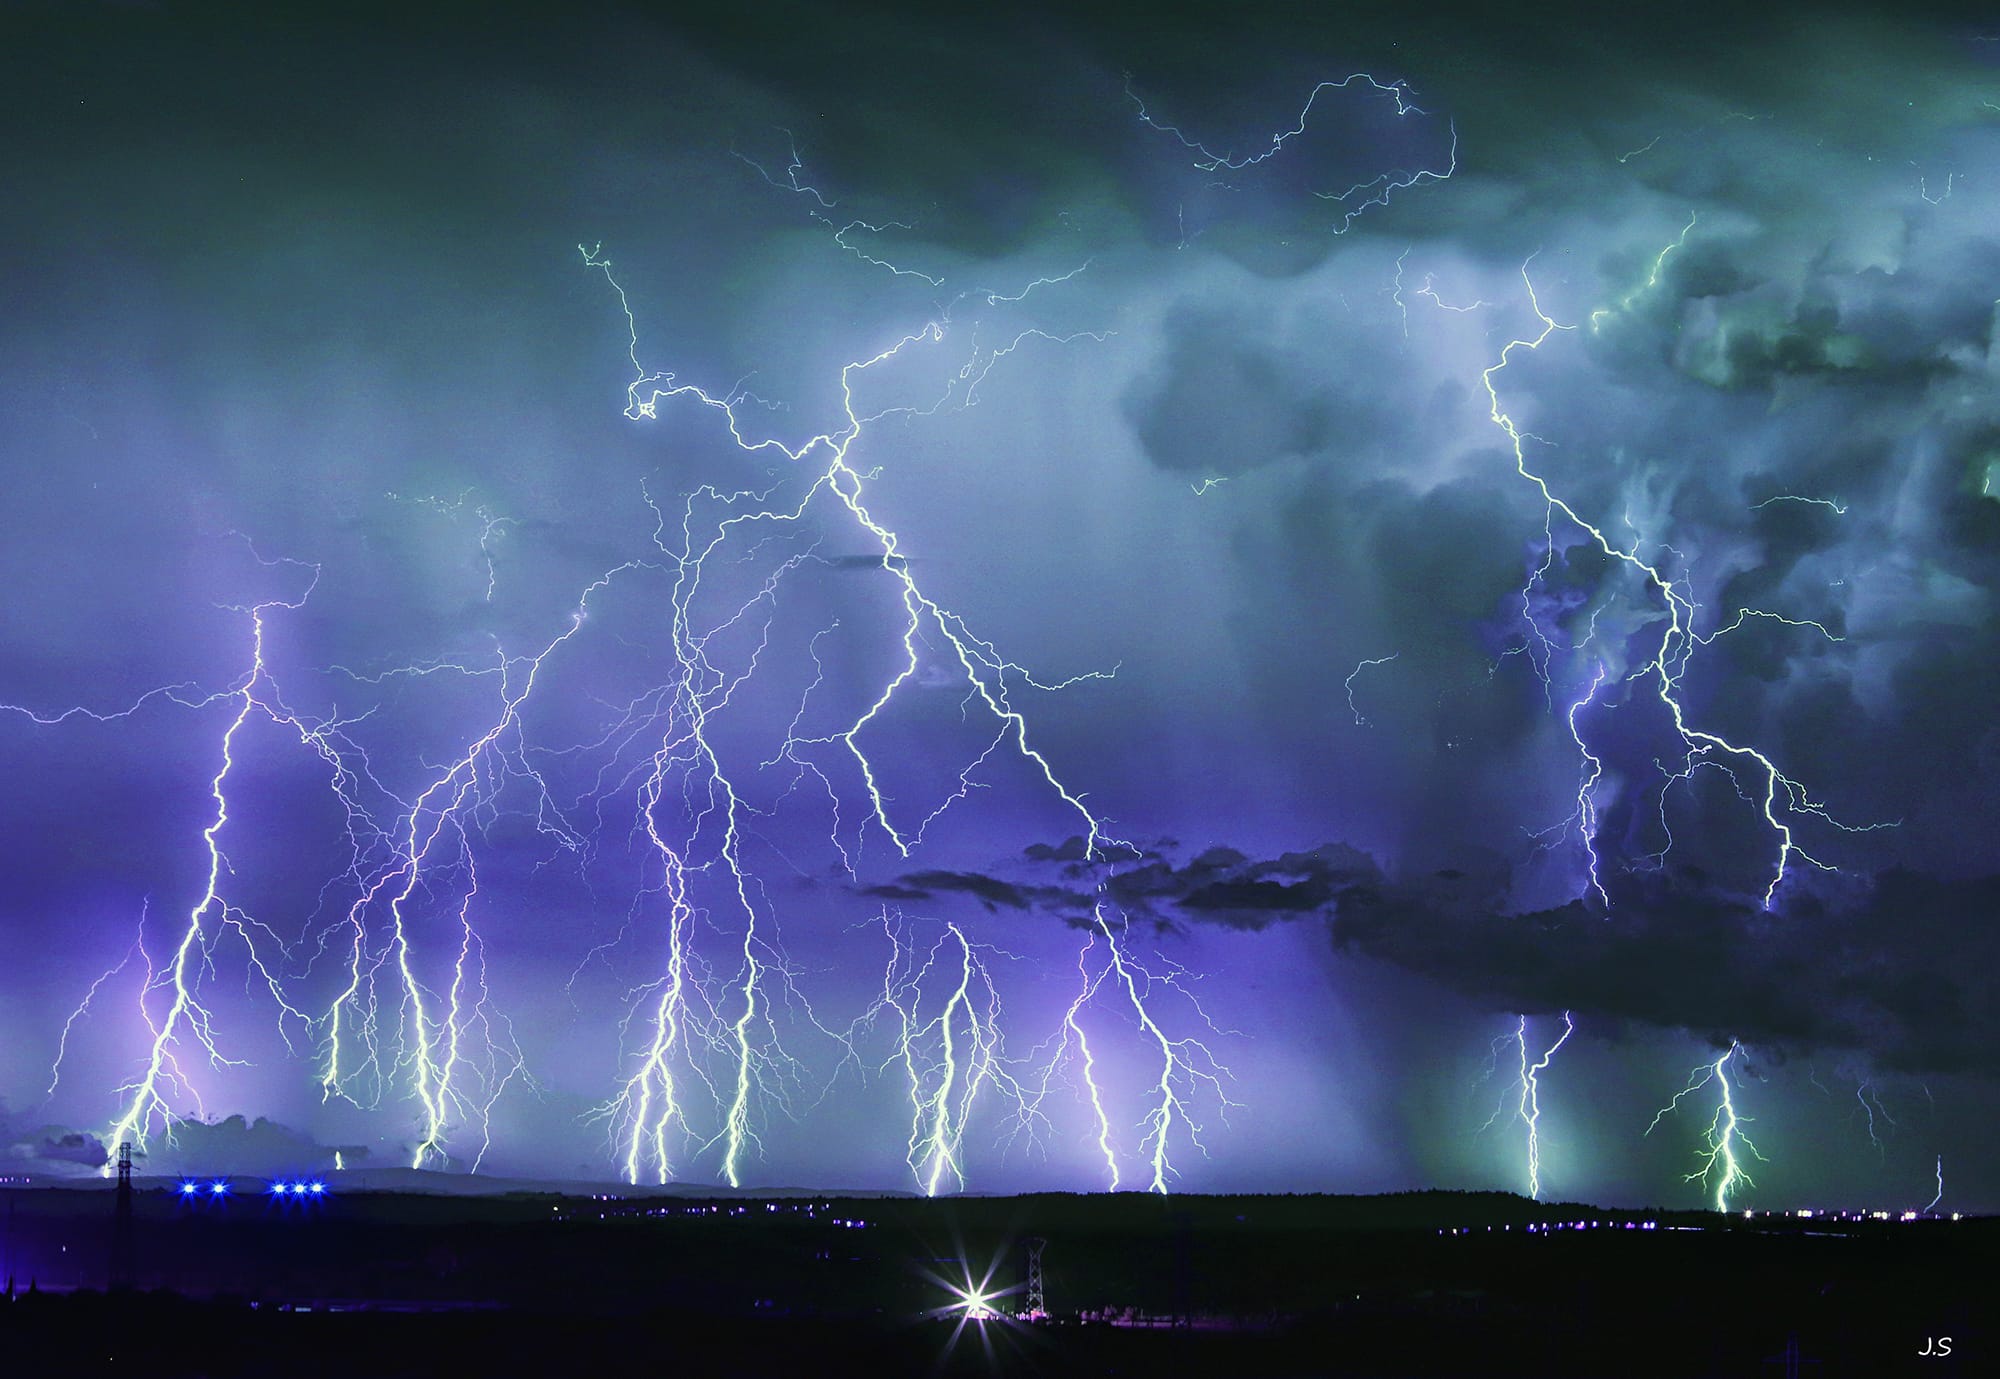 Impressionnant orage dans la nuit d'hier sur l'Hérault
Photo prise depuis l'agglomération Narbonnaise
10 images empilées - 13/08/2020 00:00 - Jérémy sentenac